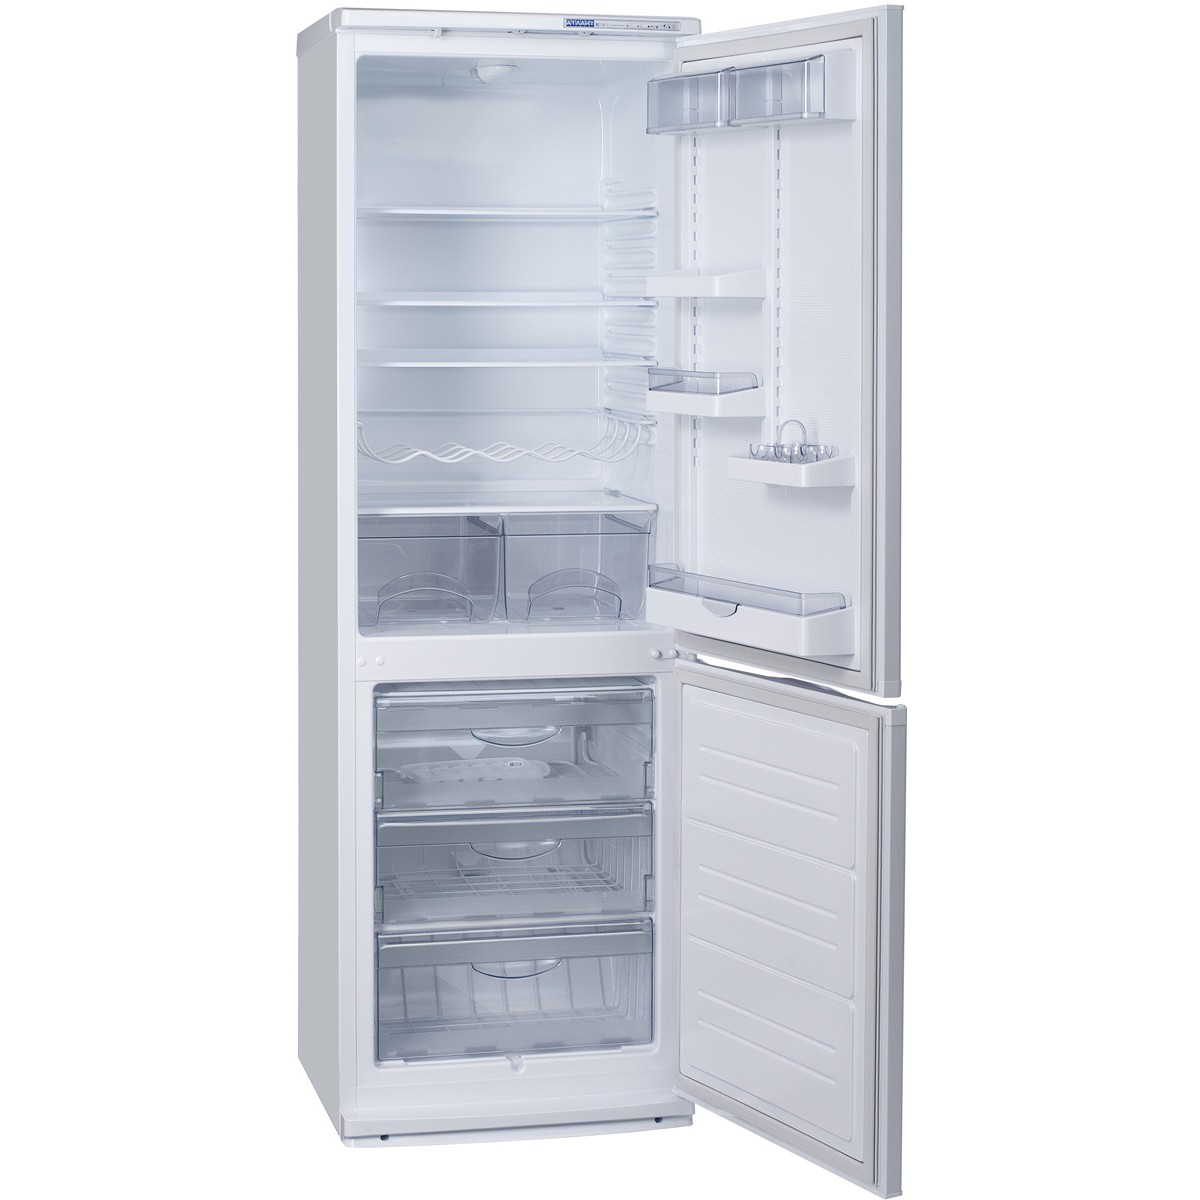 Купить холодильник в сочи. Холодильник Атлант хм 4010-022. Атлант XM 6021-031. ATLANT хм 6021-031. Атлант хм-6021-031.